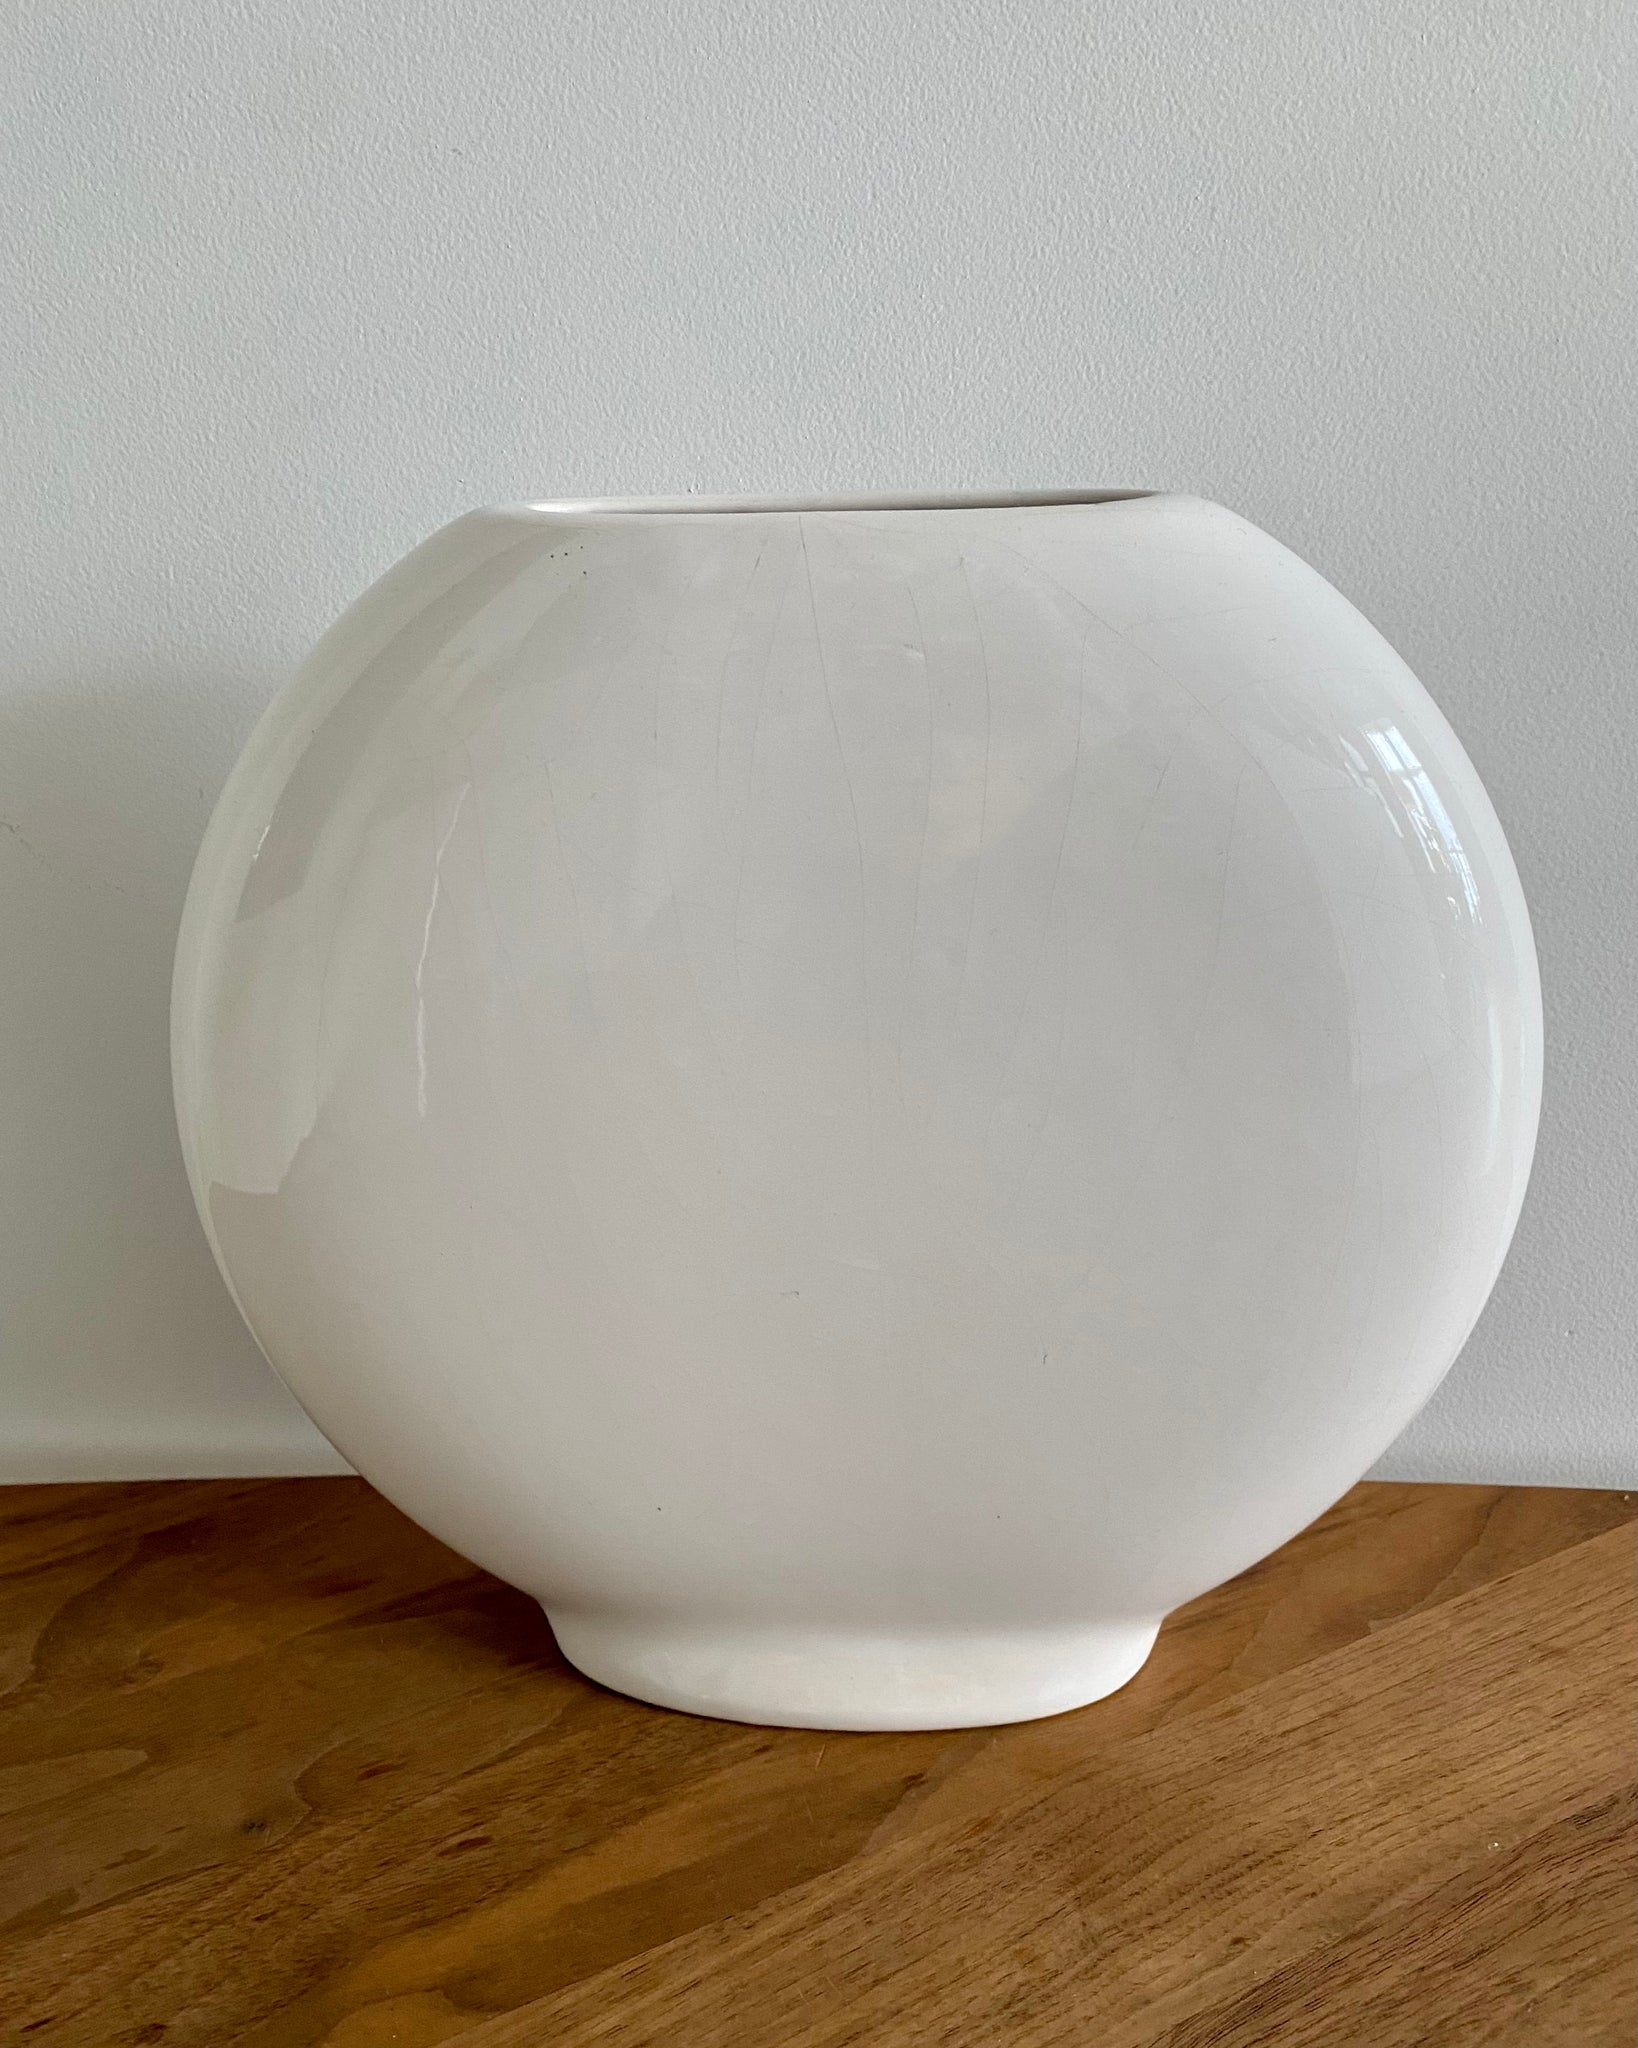 Flat round vase white